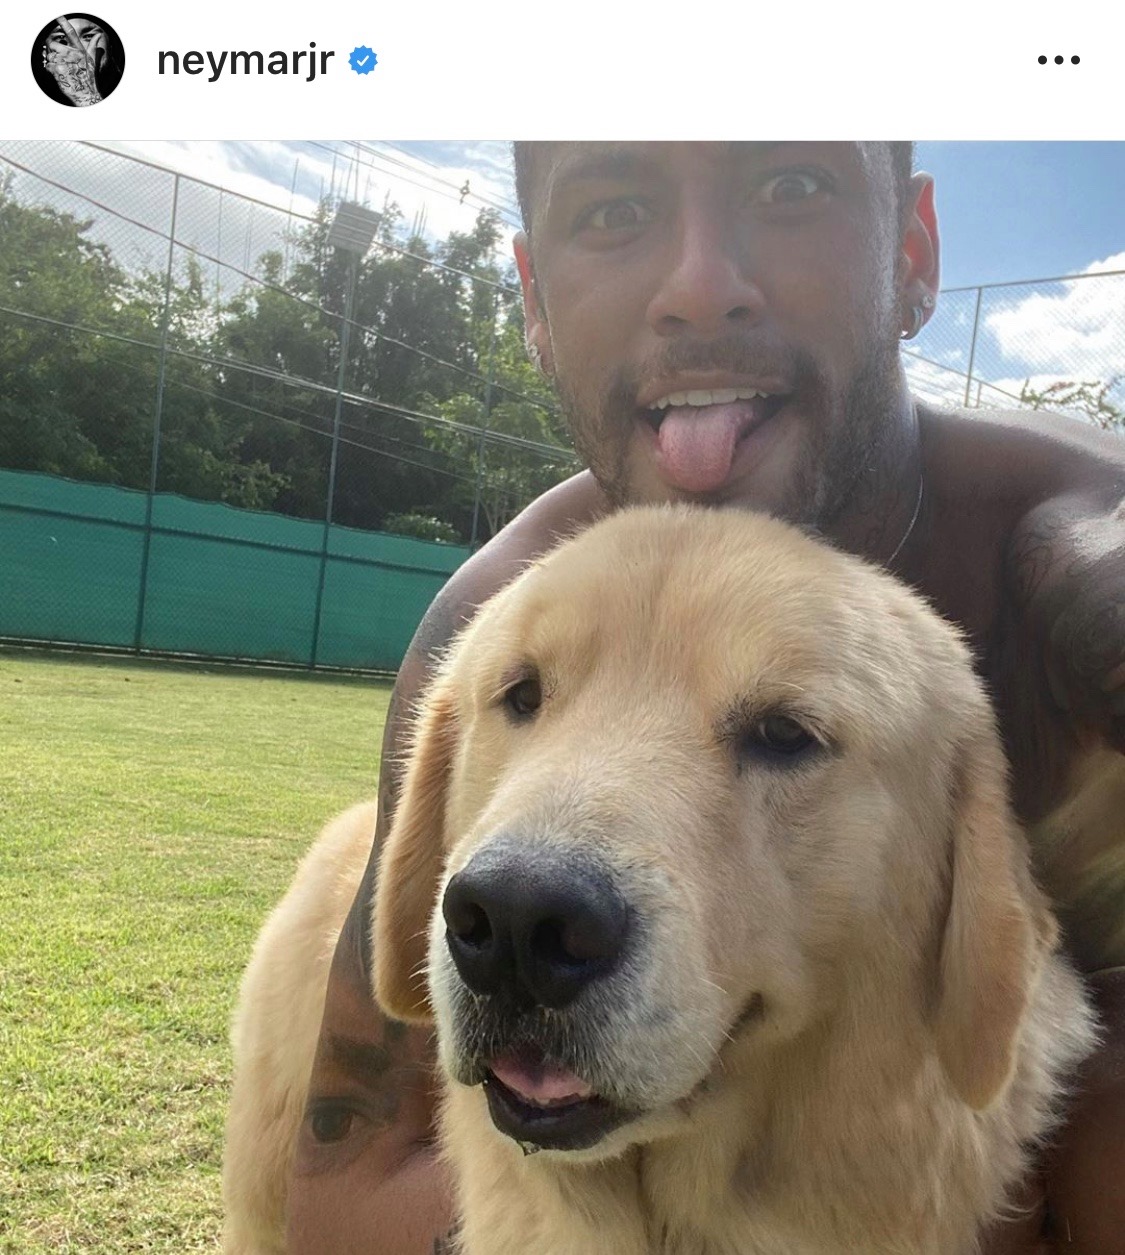 Neymar không chỉ là một cầu thủ bóng đá xuất sắc mà còn là một người yêu động vật đầy nhiệt huyết. Trong hình ảnh này, bạn sẽ được khám phá bí mật của sức khỏe thể chất của Neymar và cảm nhận sự thân thiện của anh ta với động vật cưng. Chắc chắn bạn sẽ yêu thích hình ảnh này!